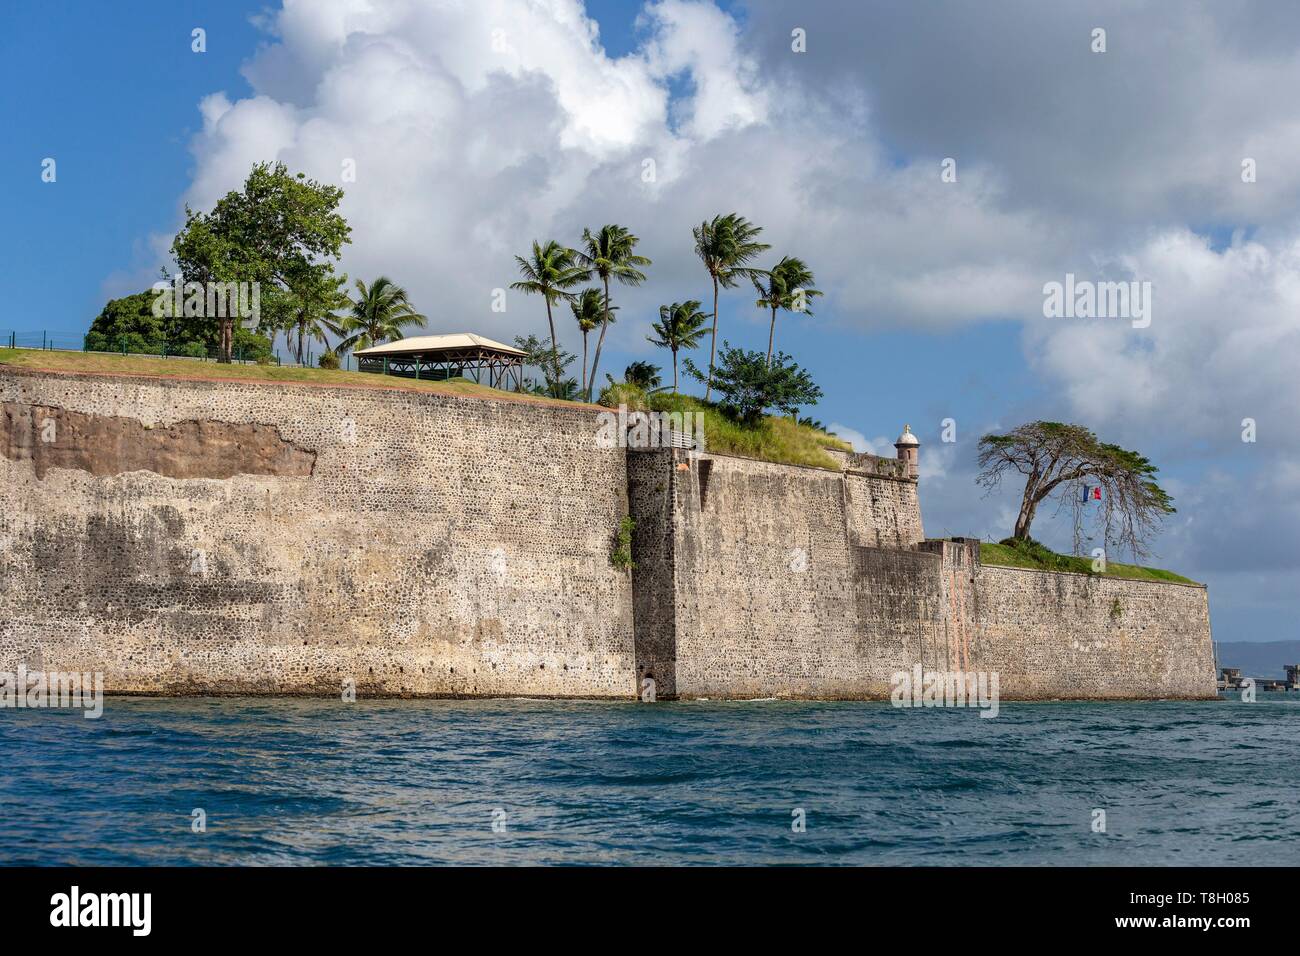 Martinique, Fort de France, Fort Saint Louis anzeigen, Vauban Art militärische Festung, Basis der Französischen Marine in Westindien Stockfoto